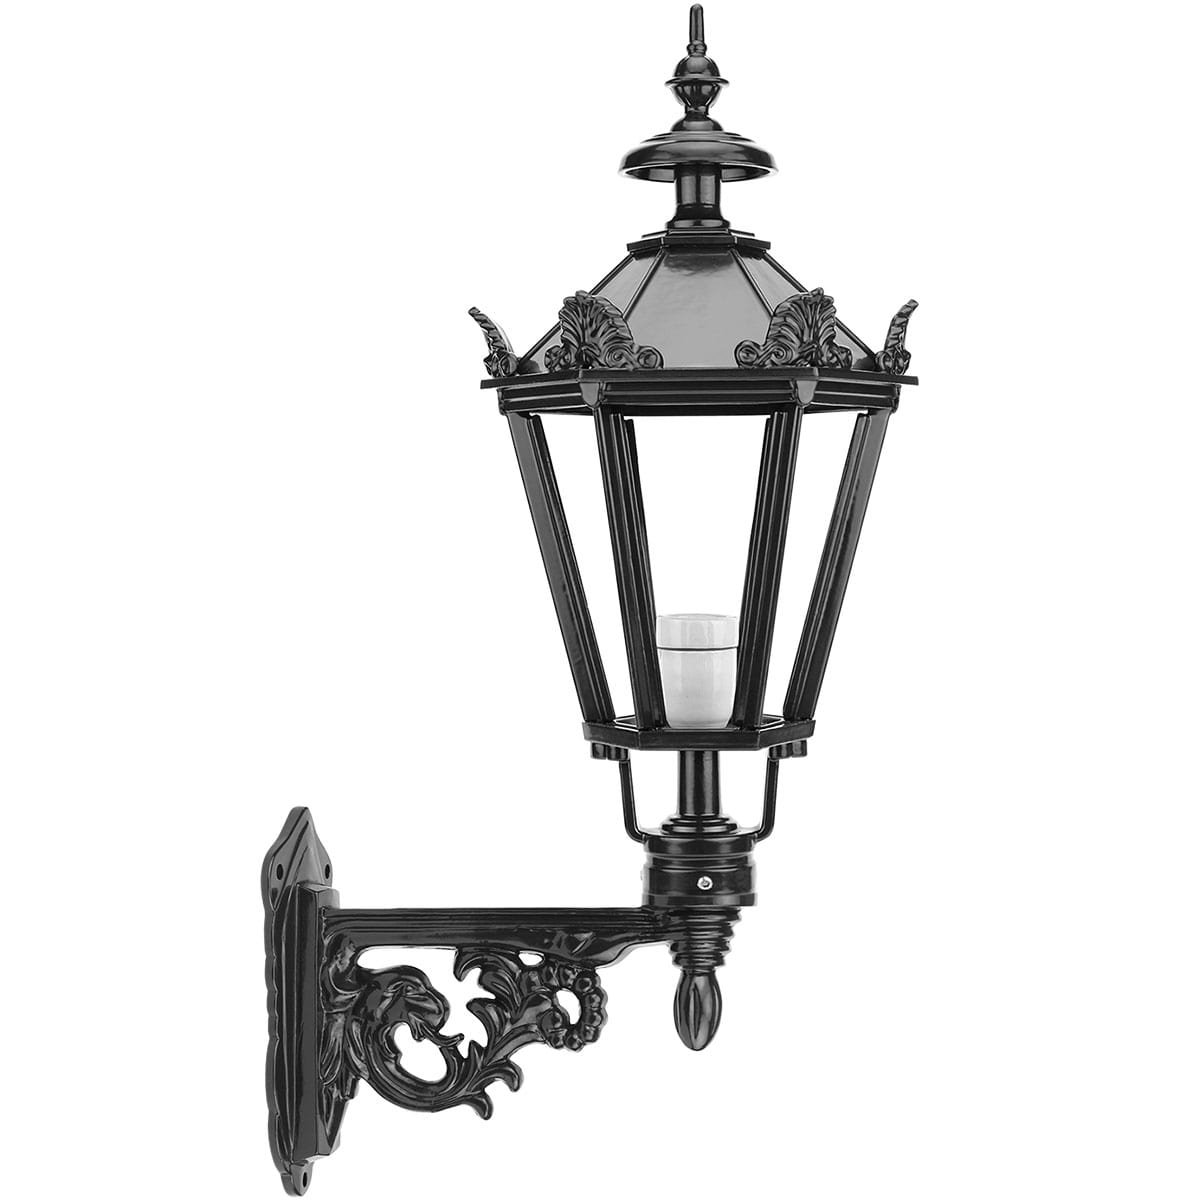 Facade lamp outdoors Ellewoutsdijk - 68 cm